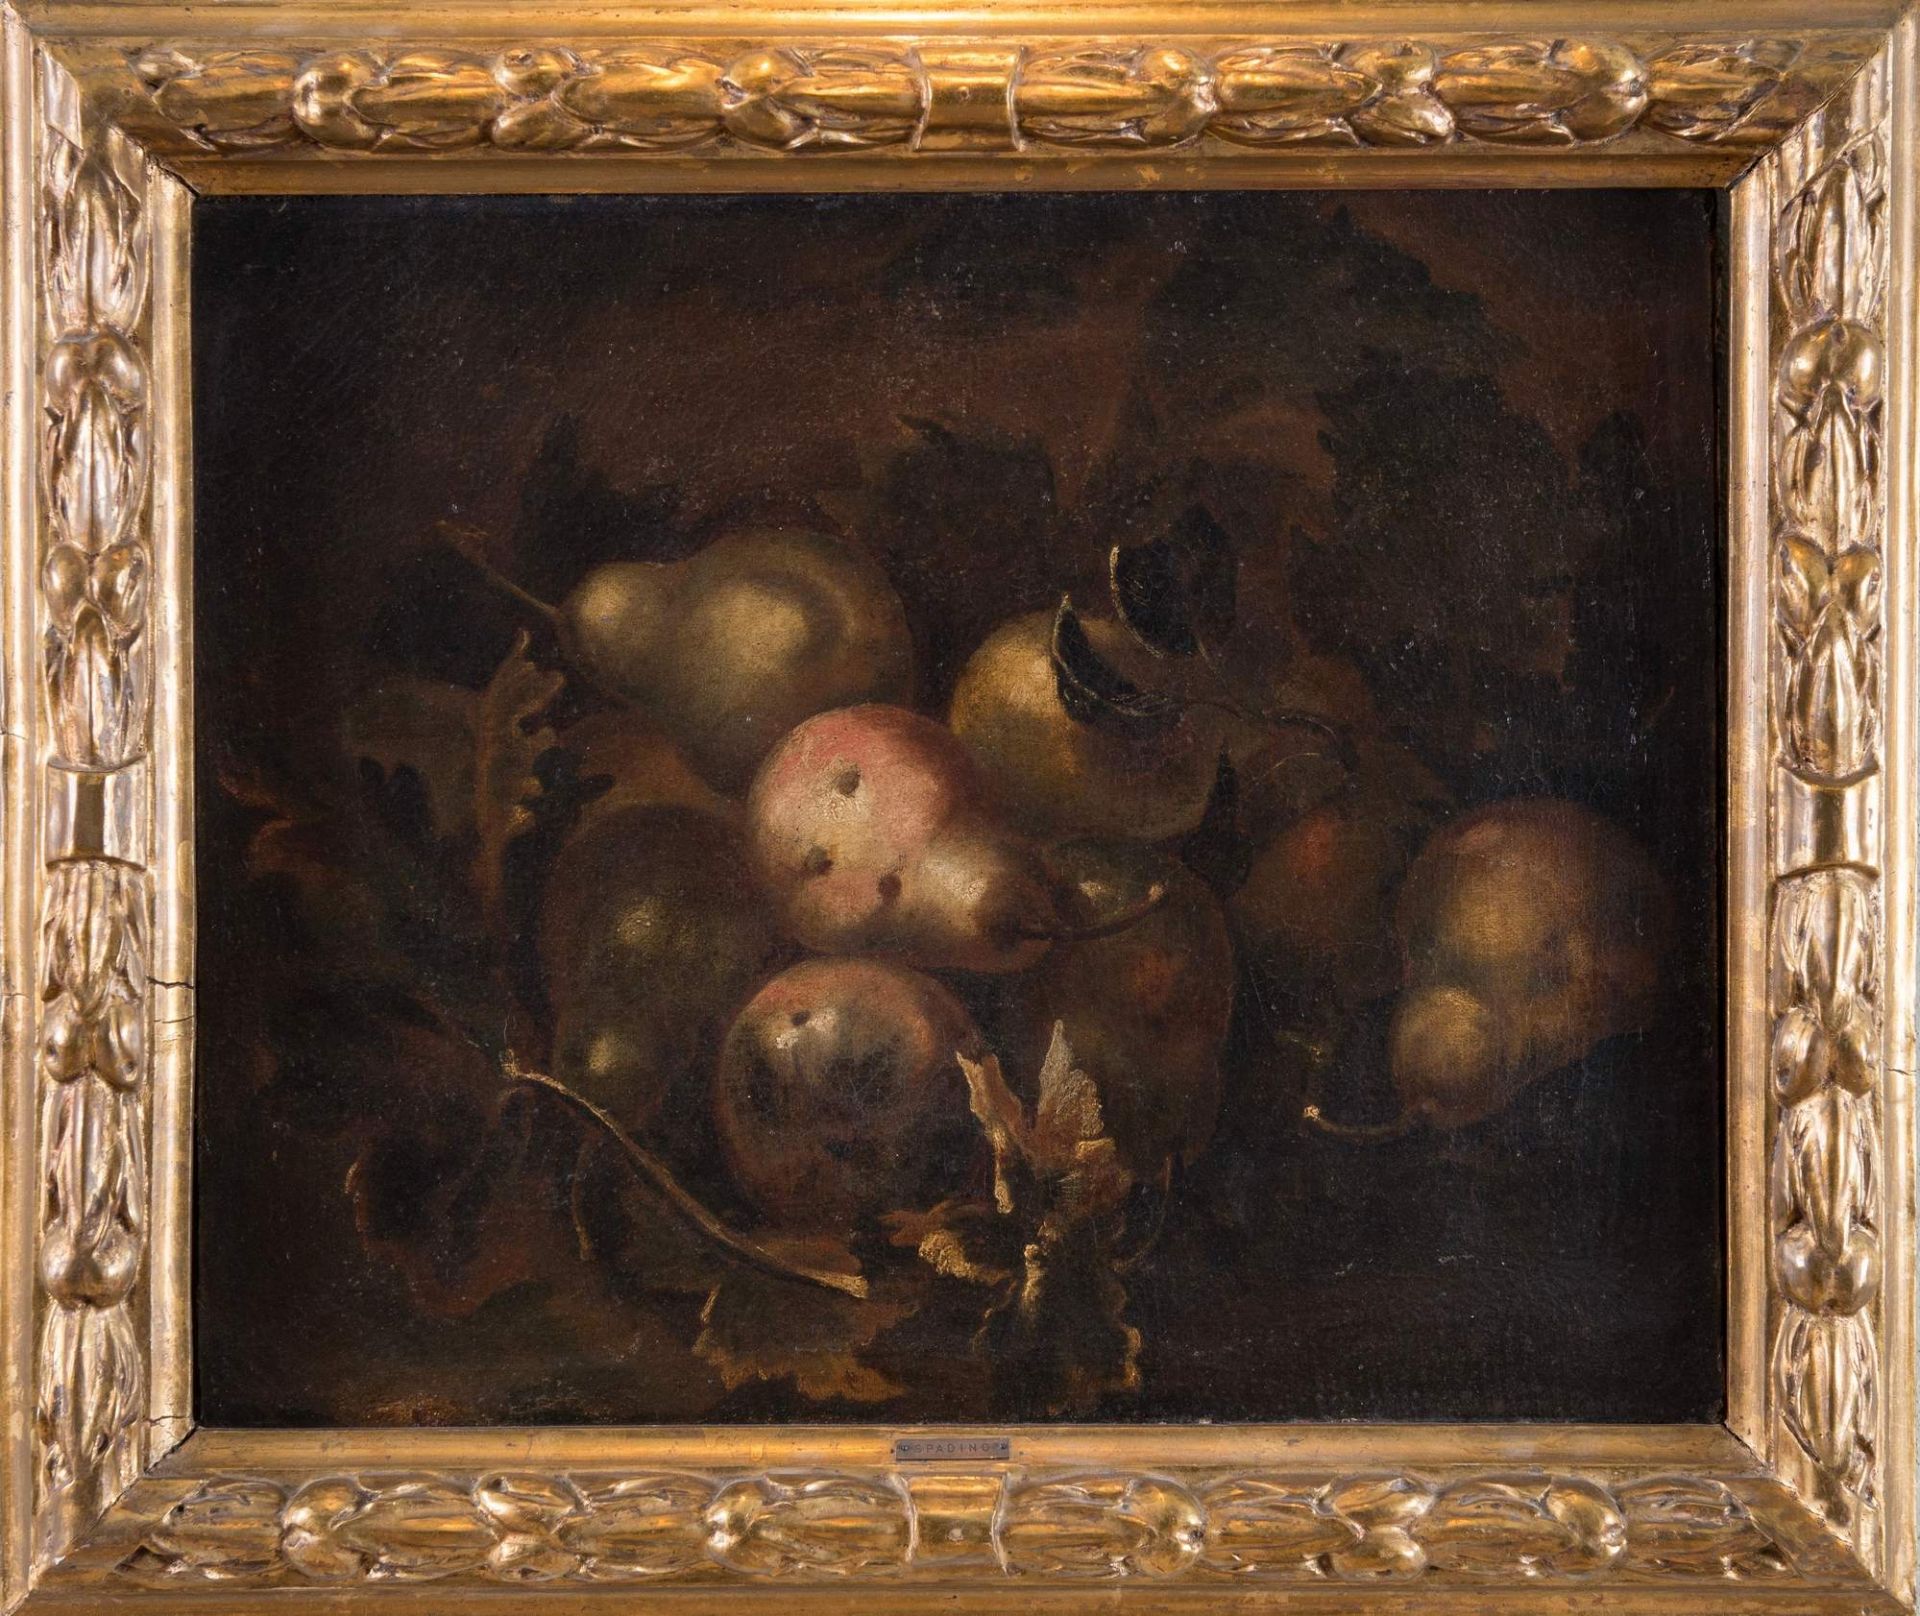 GIOVANNI PAOLO SPADINO (Roma 1659 - 1730), attr. "Natura morta con frutta". Olio su tela. Cm